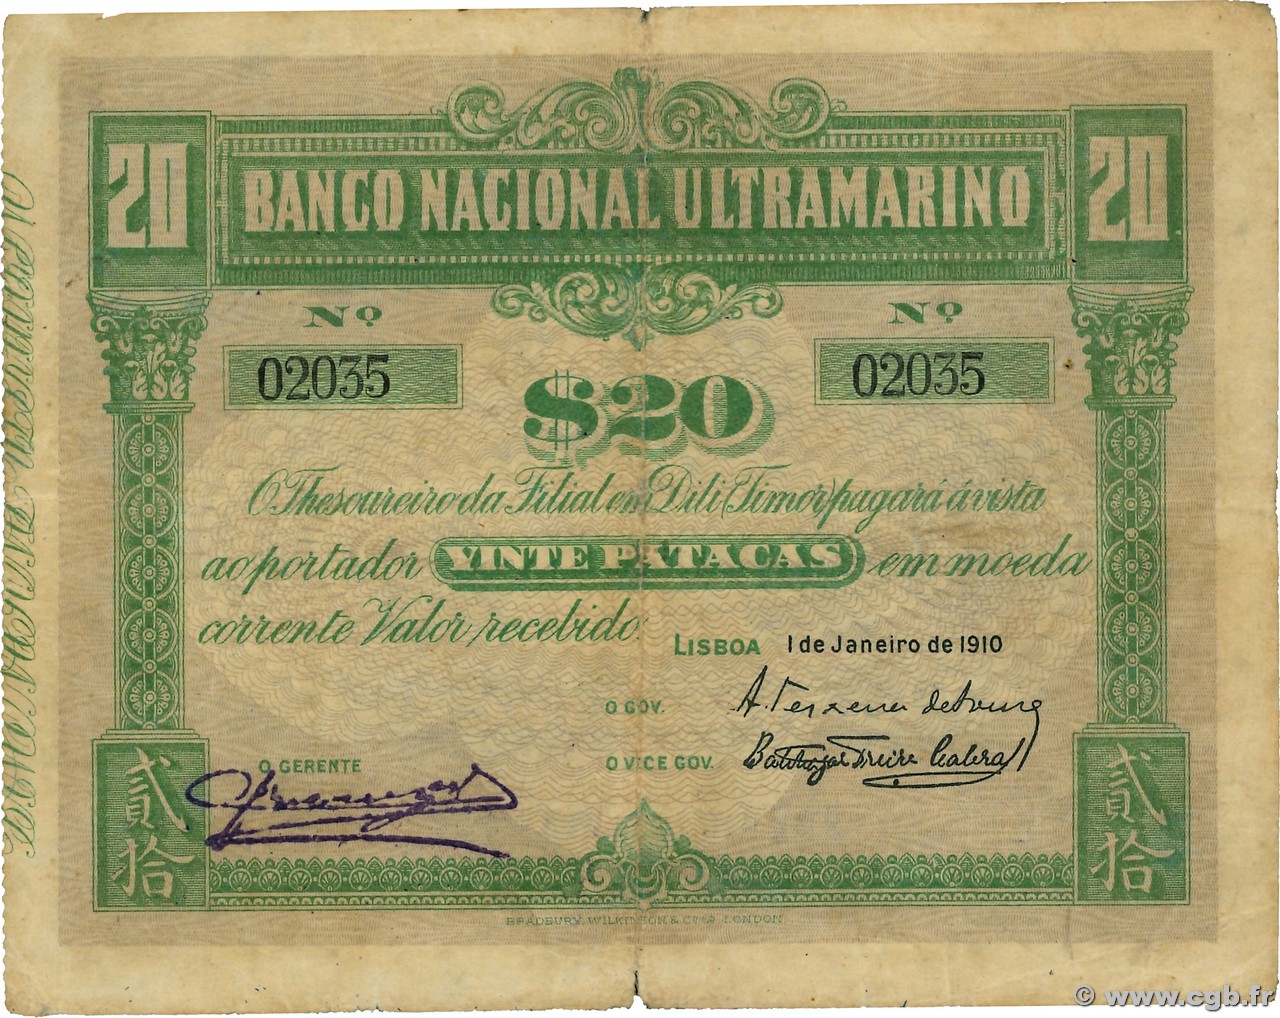 20 Patacas TIMOR  1910 P.04 S